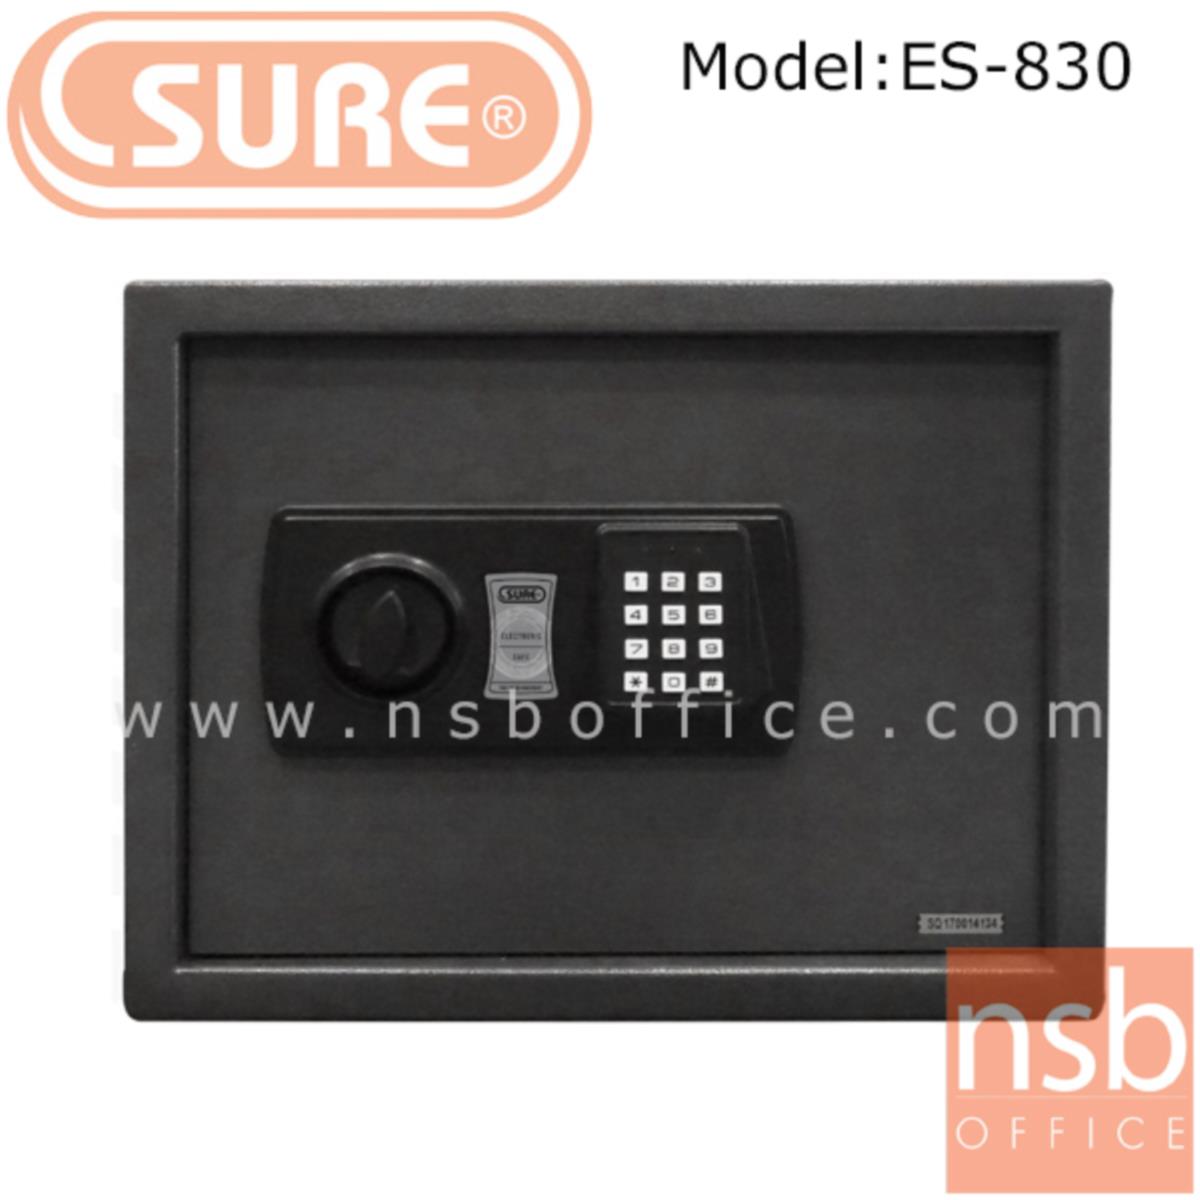 ตู้เซฟดิจตอล SR-ES830 น้ำหนัก 11 กก. (1 รหัสกด / ปุ่มหมุนบิด)   